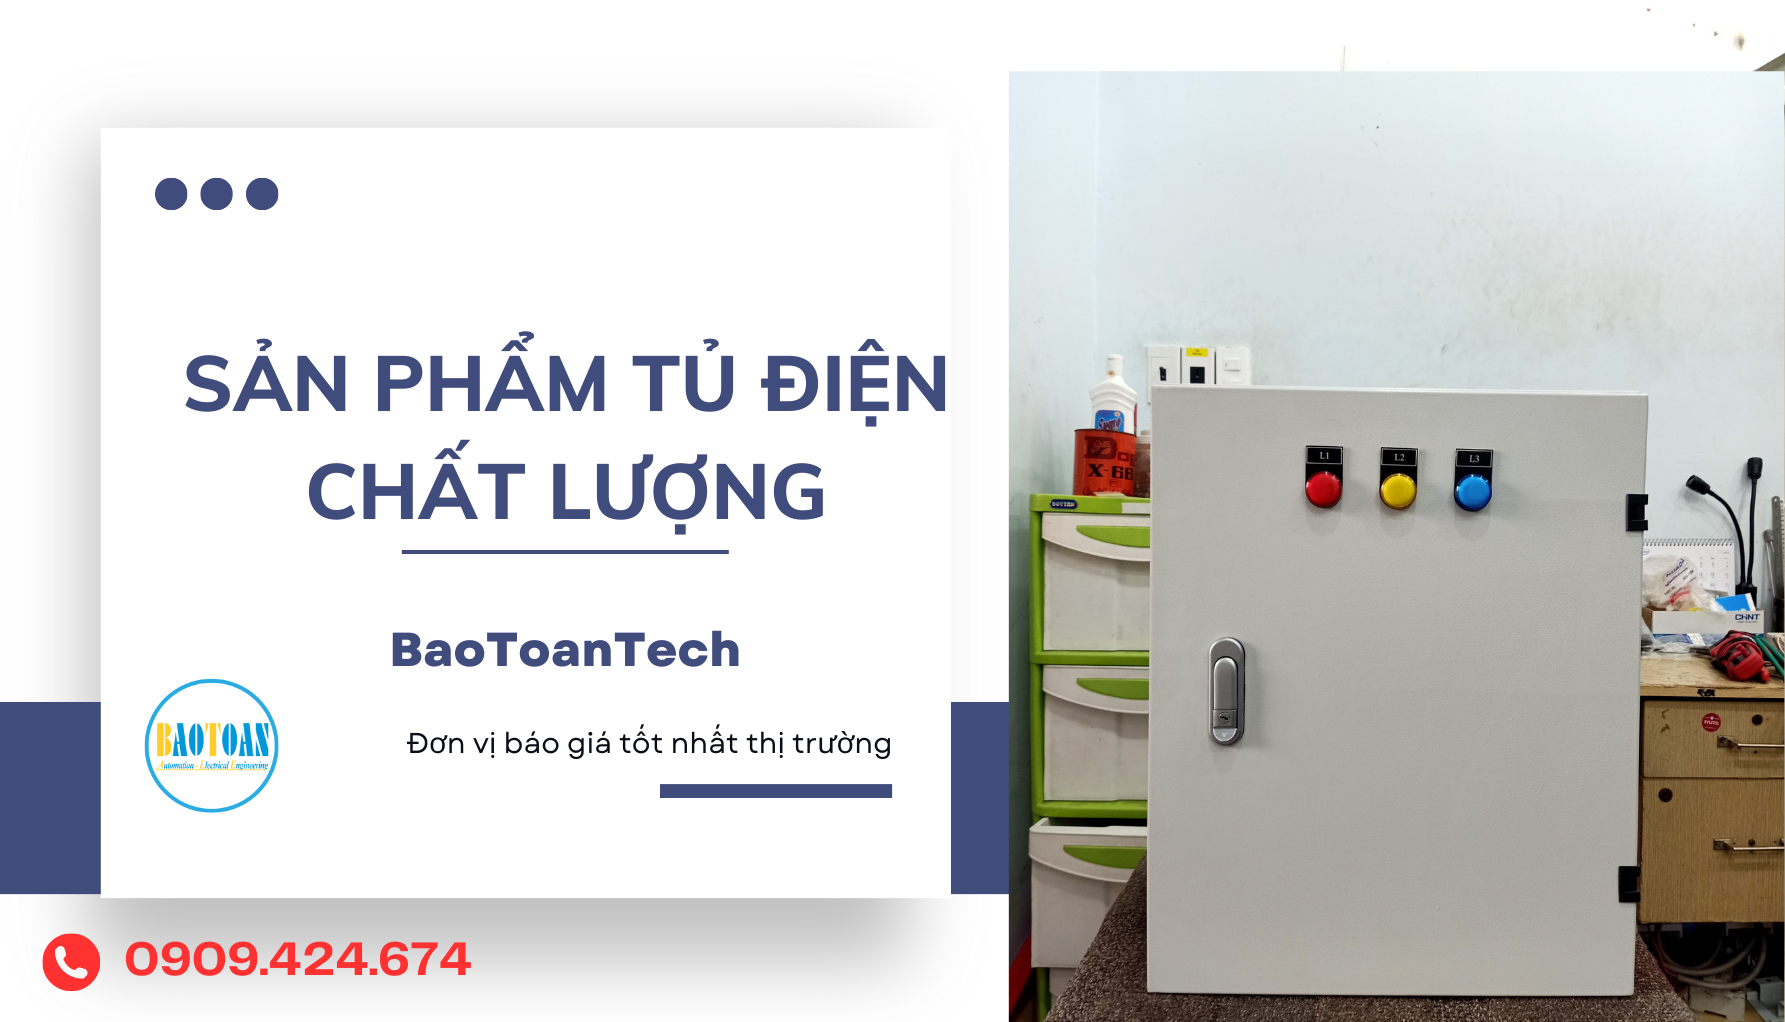 Báo giá tủ điện cấp nguồn chung cư tại BaoToanTech